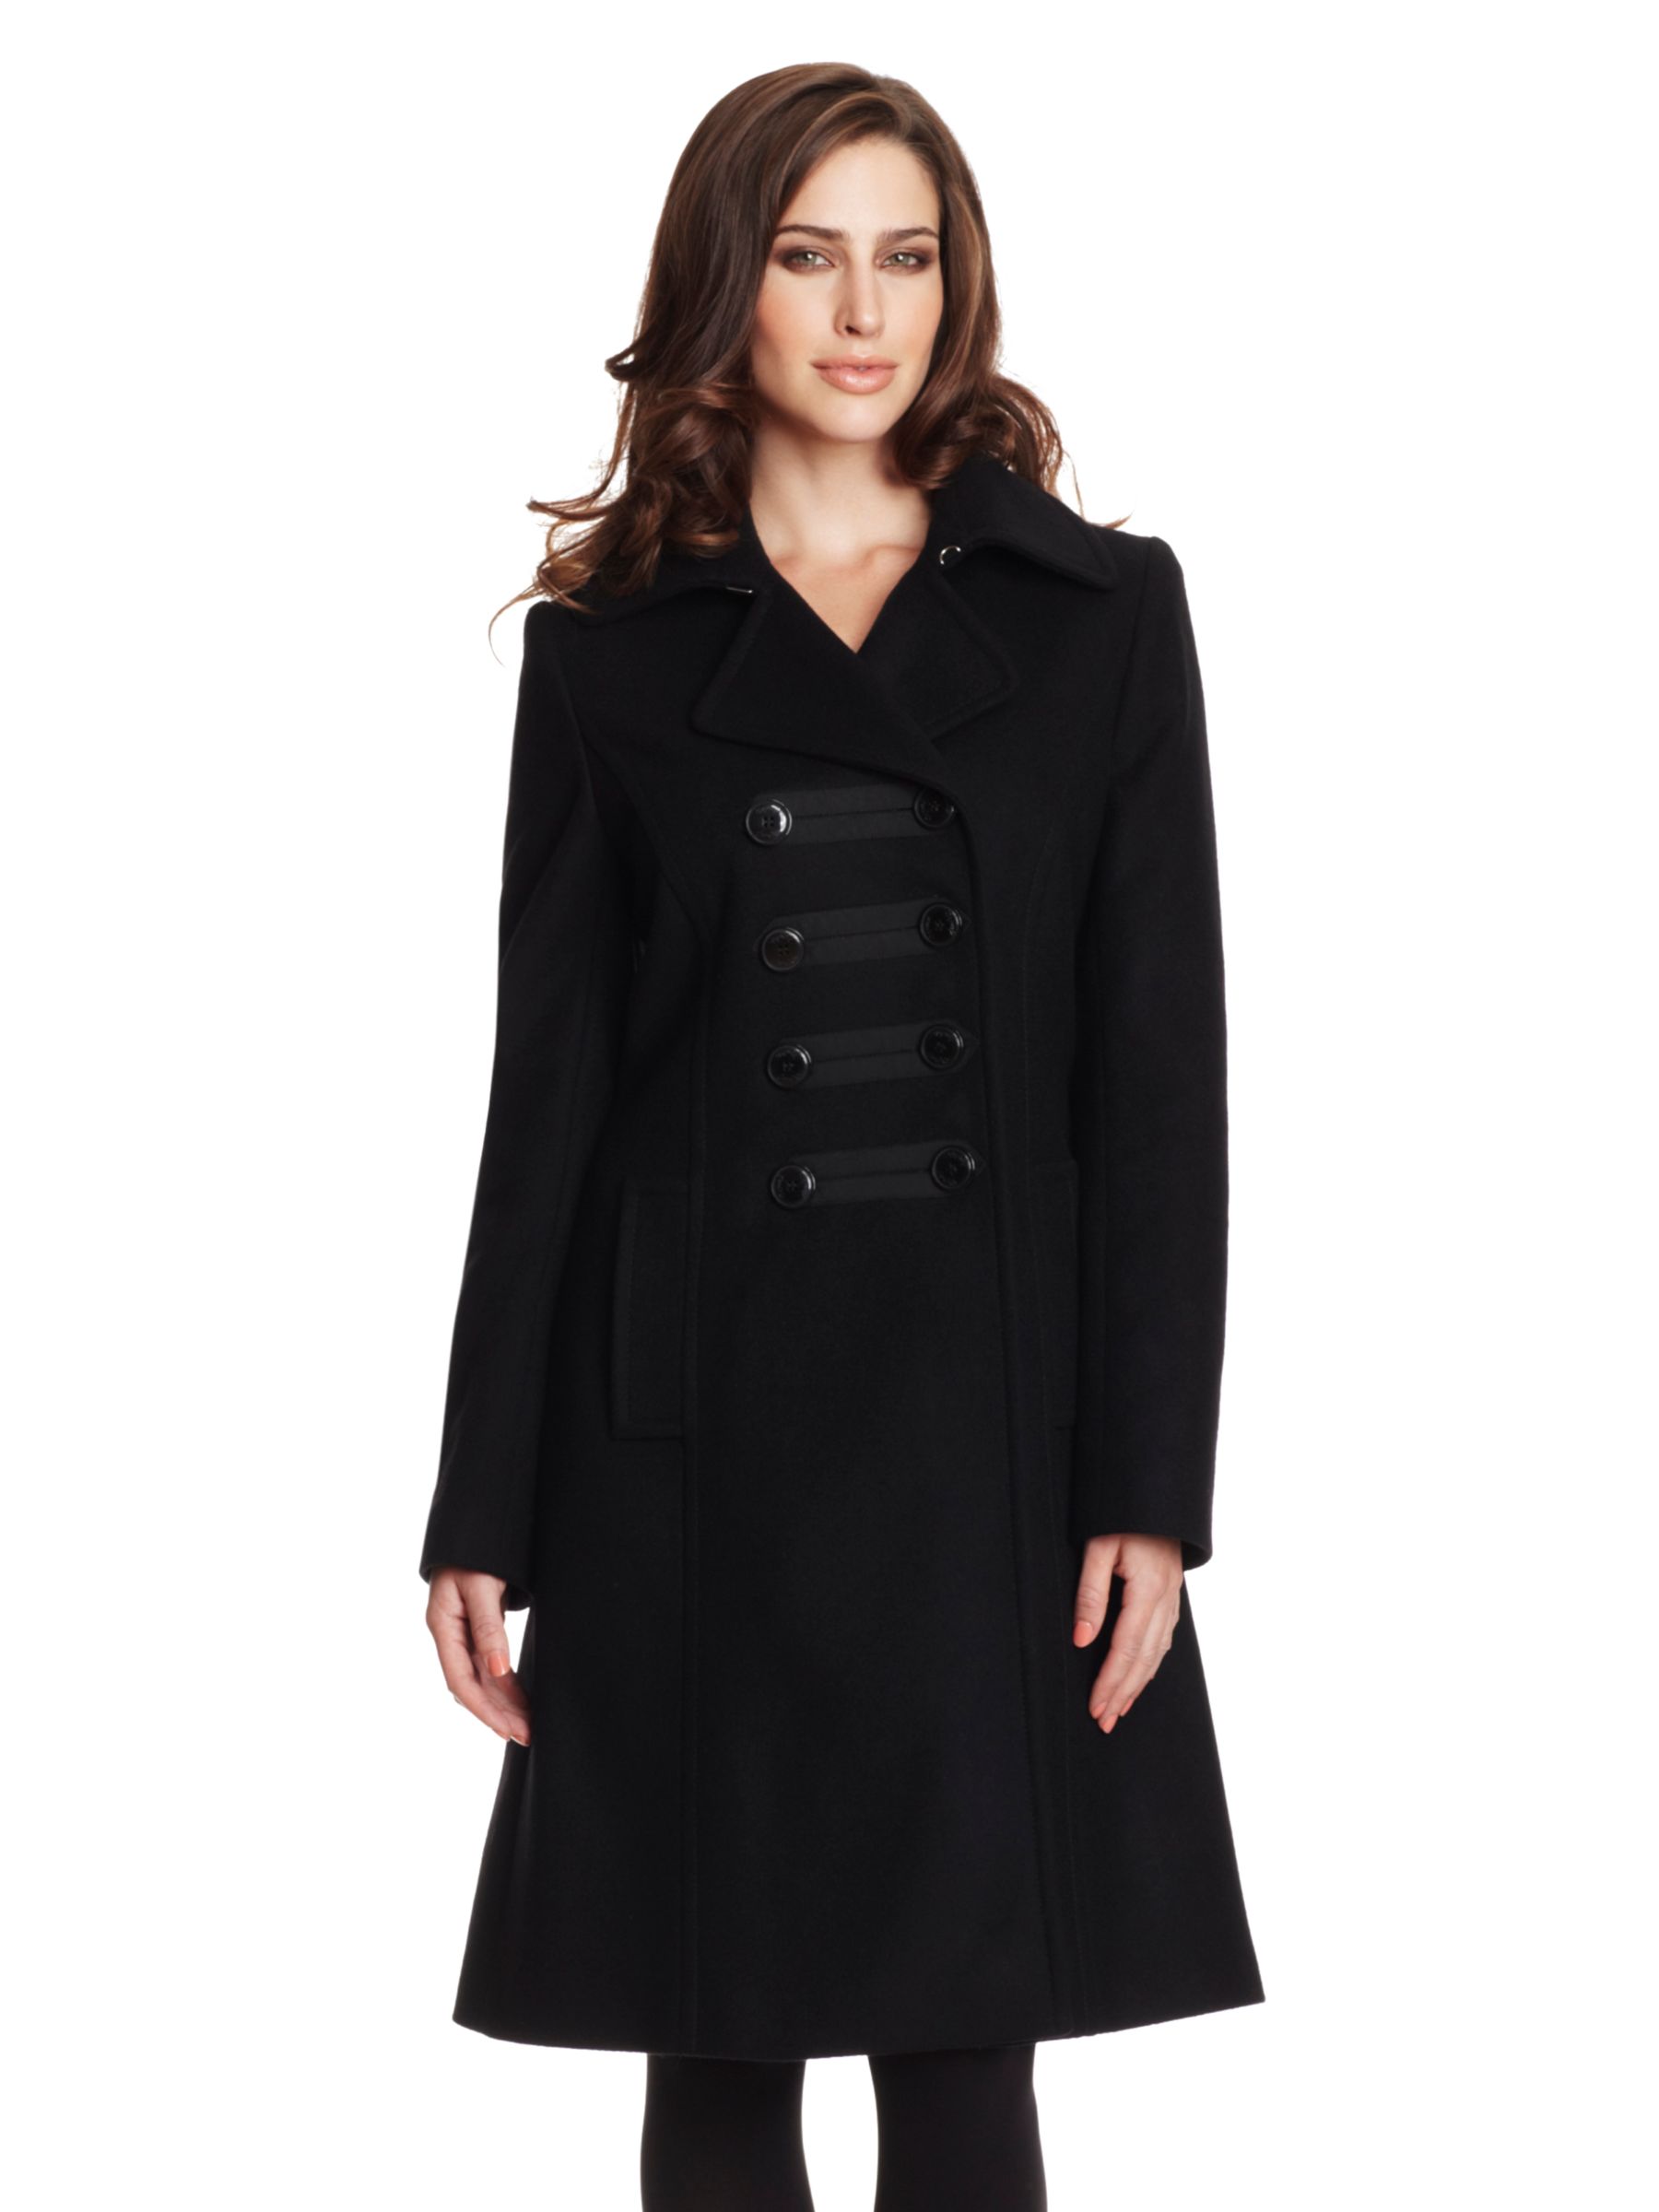 Damsel in a Dress Louisa- May Military Coat, Black at JohnLewis